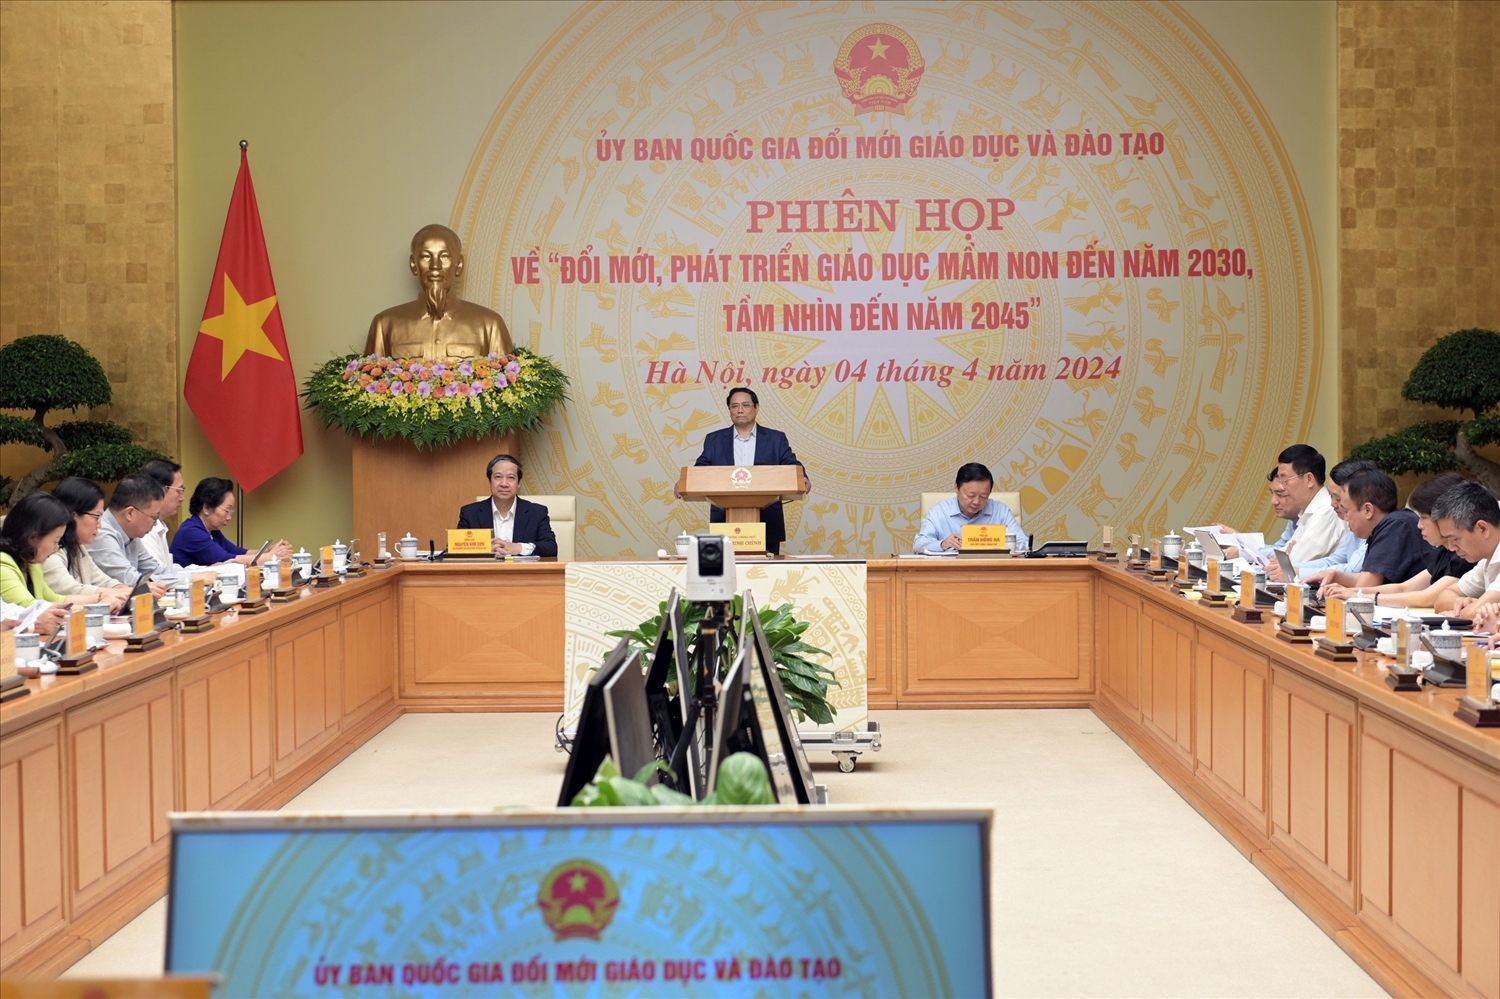 Thủ tướng Chính phủ Phạm Minh Chính chủ trì phiên họp Uỷ ban quốc gia đổi mới GD&ĐT ngày 4/4/2024 để bàn giải pháp phát triển GDMN trong tình hình mới